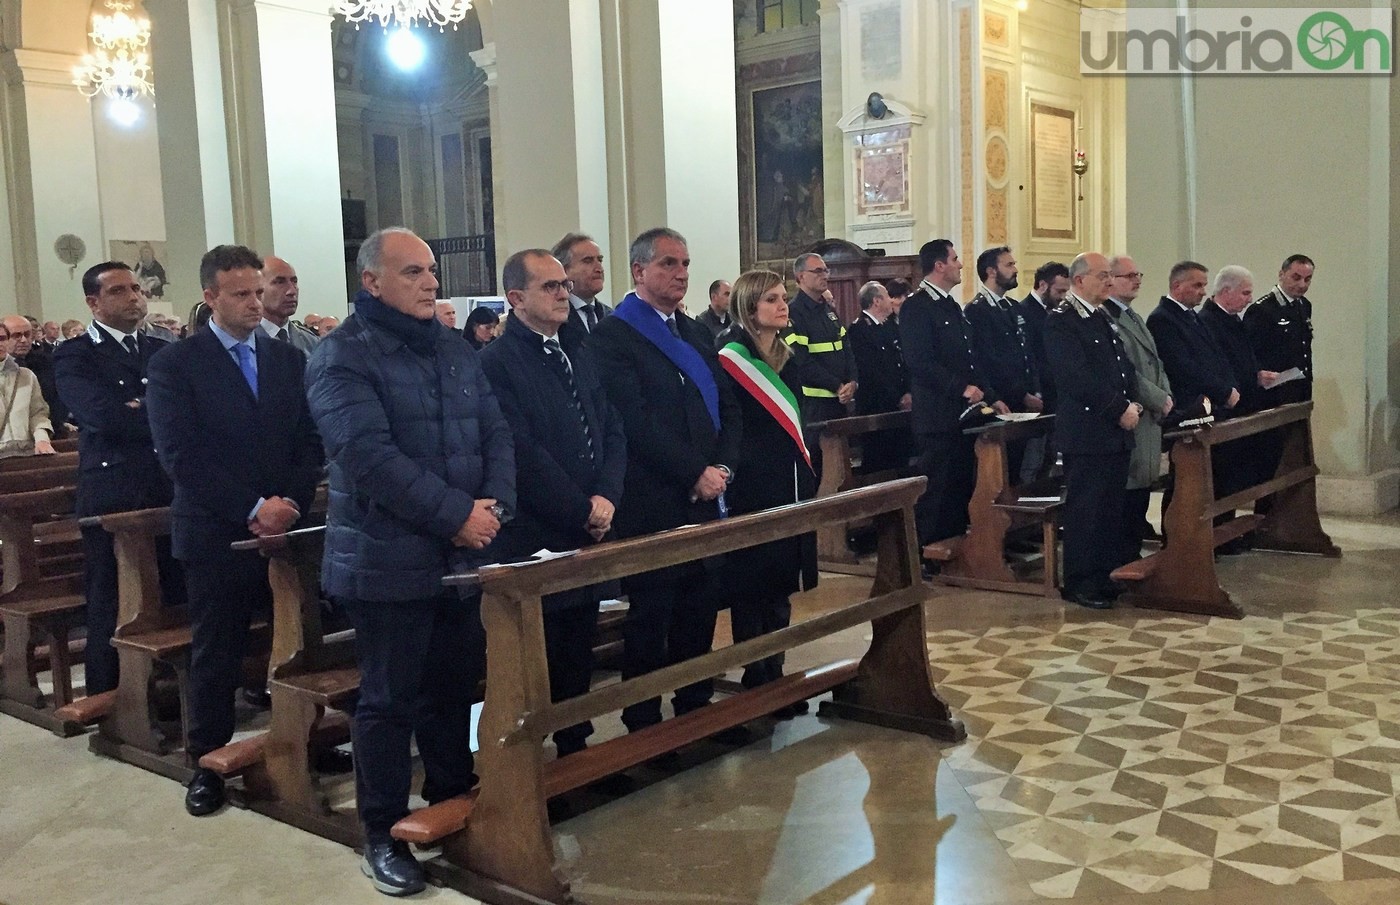 Virgo-Fidelis-carabinieri-Terni-in-cattedrale-21-novembre-2016-1